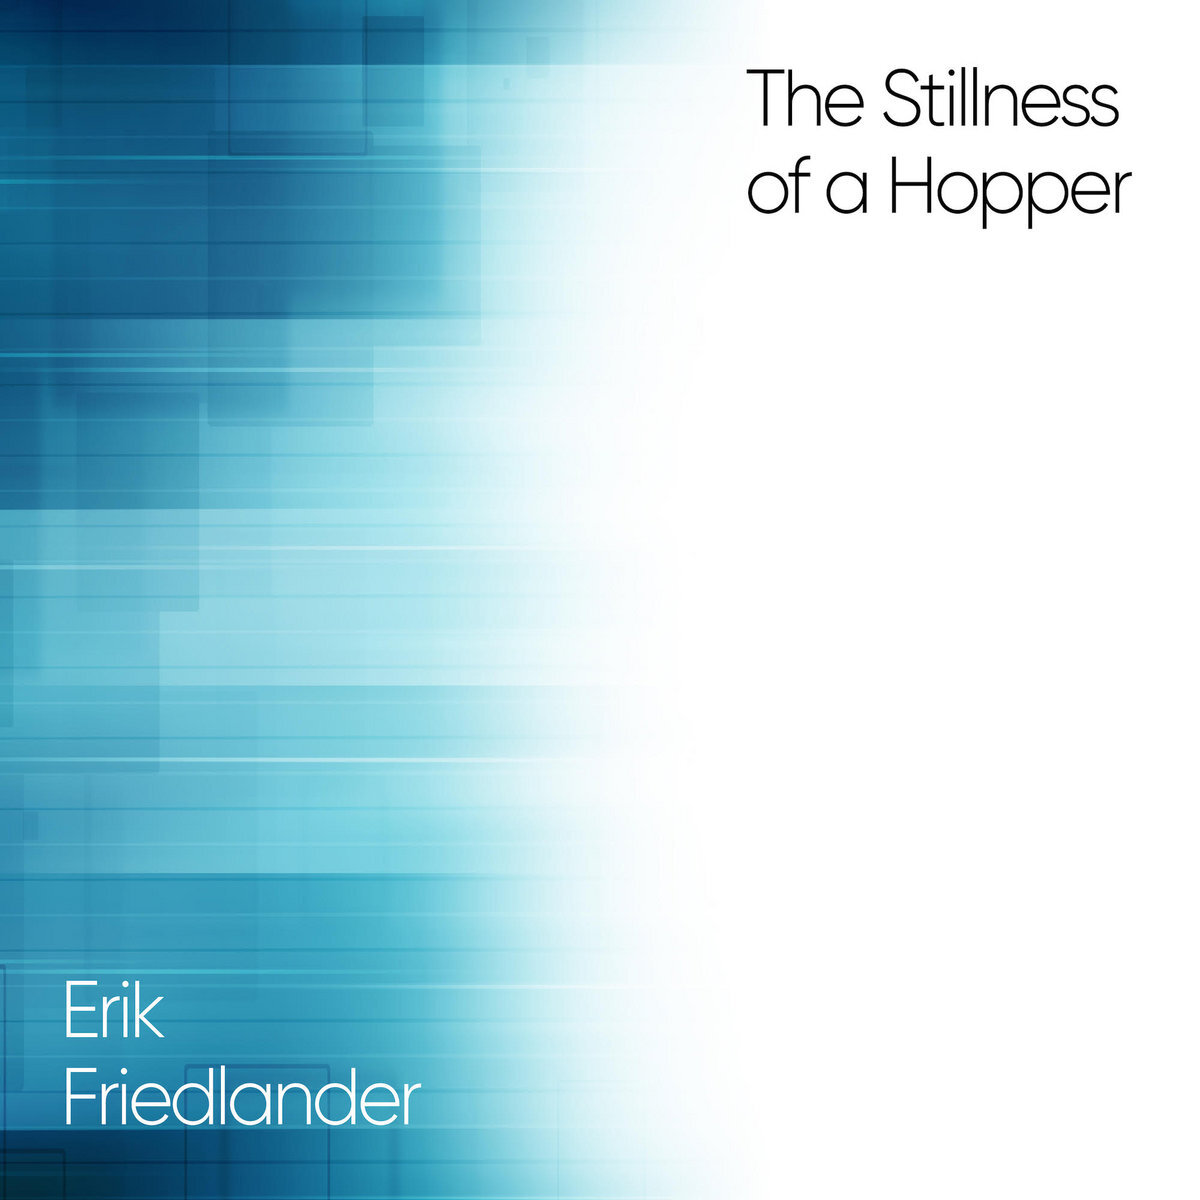 The Stillness of a Hopper